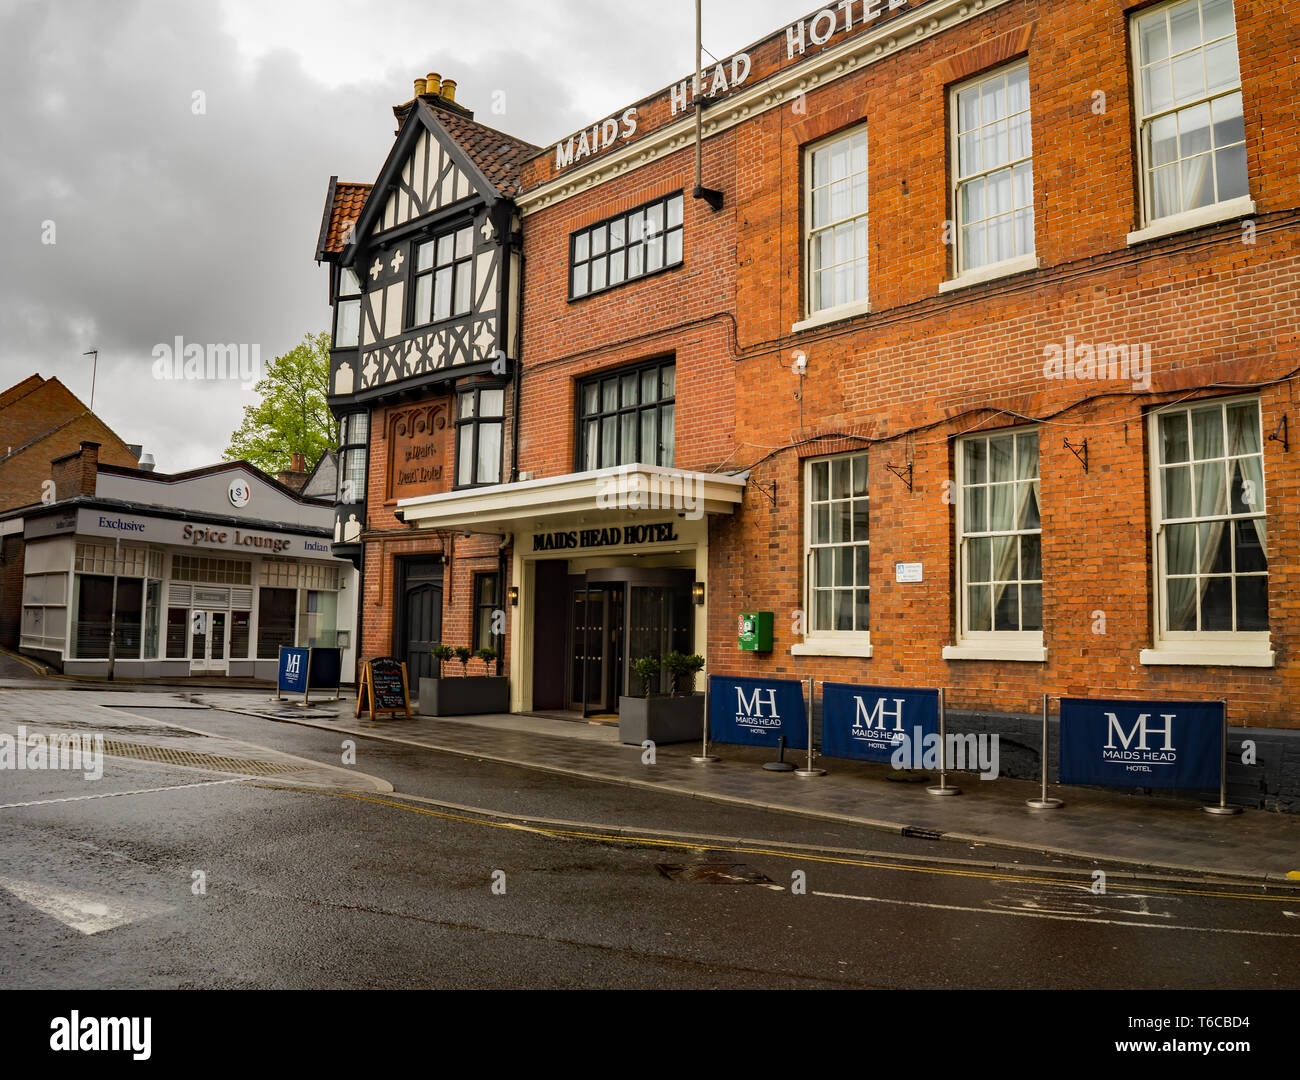 L'entrée de l'hôtel Maids Head, Tombland, Norwich. Sur la route de l'hôtel est le chef de ménage Spice Lounge, une cuisine indienne authentique hautement cotées Banque D'Images